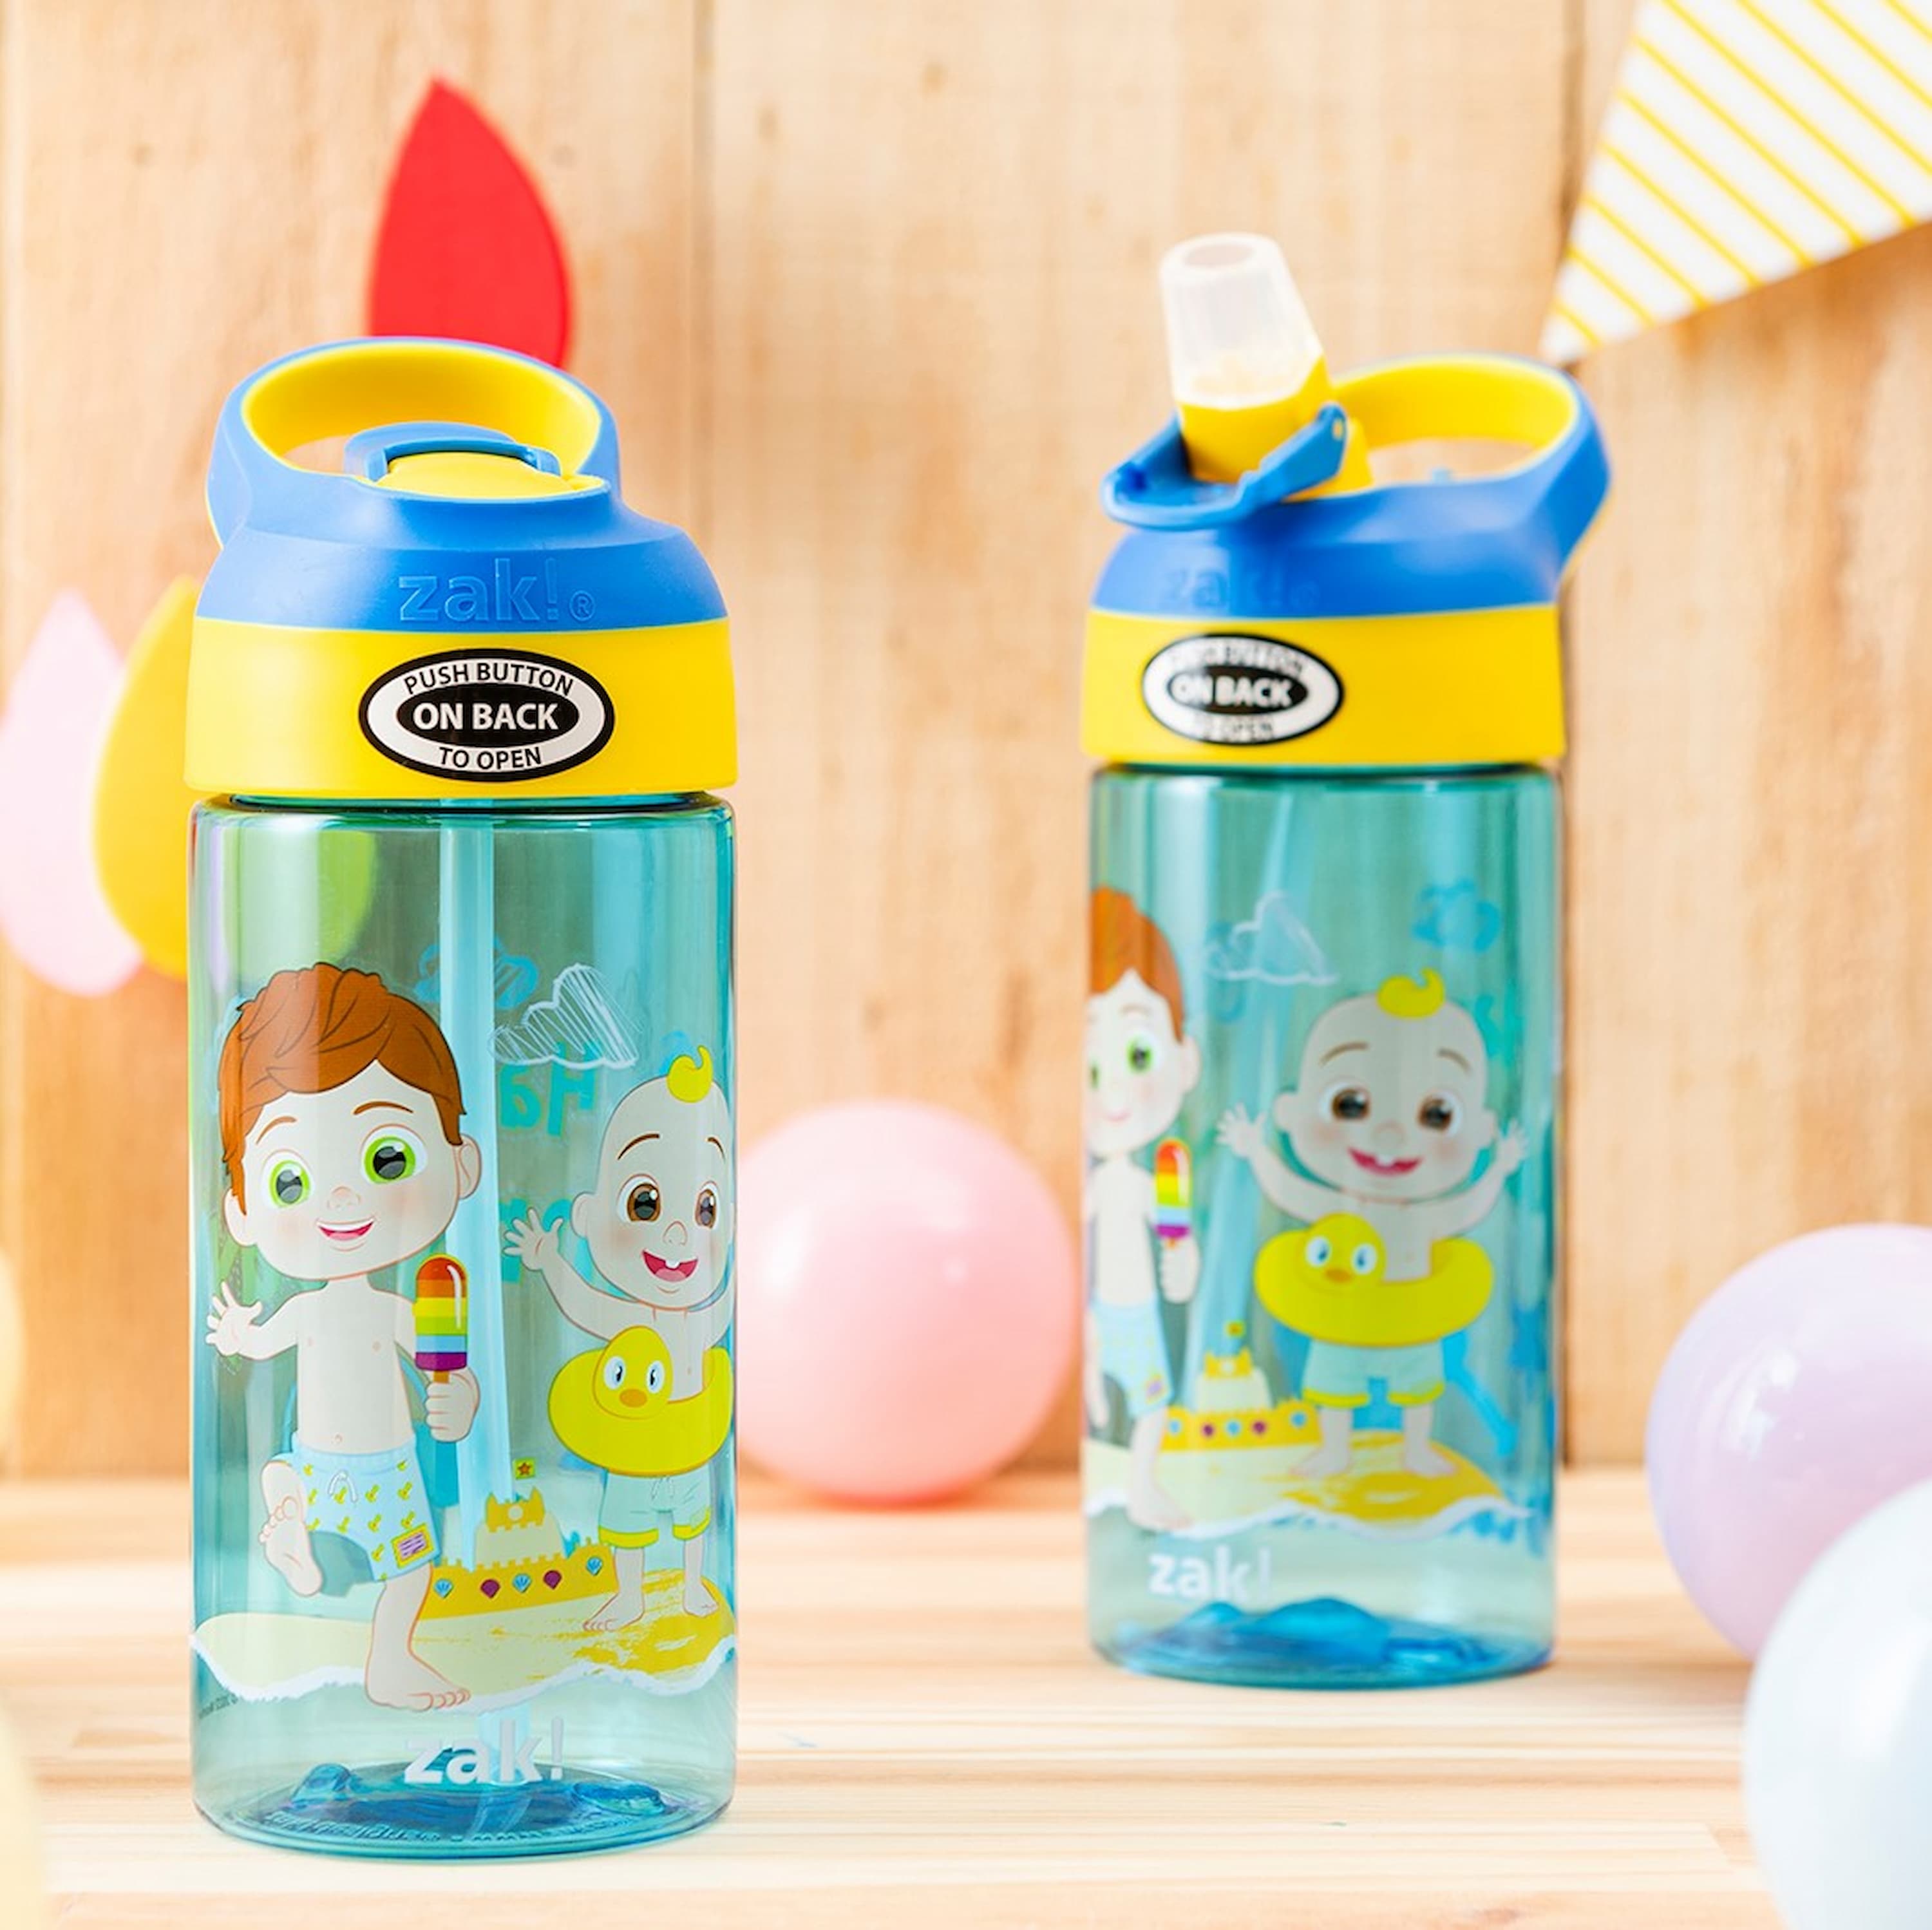 Blippi Kids Water Bottle